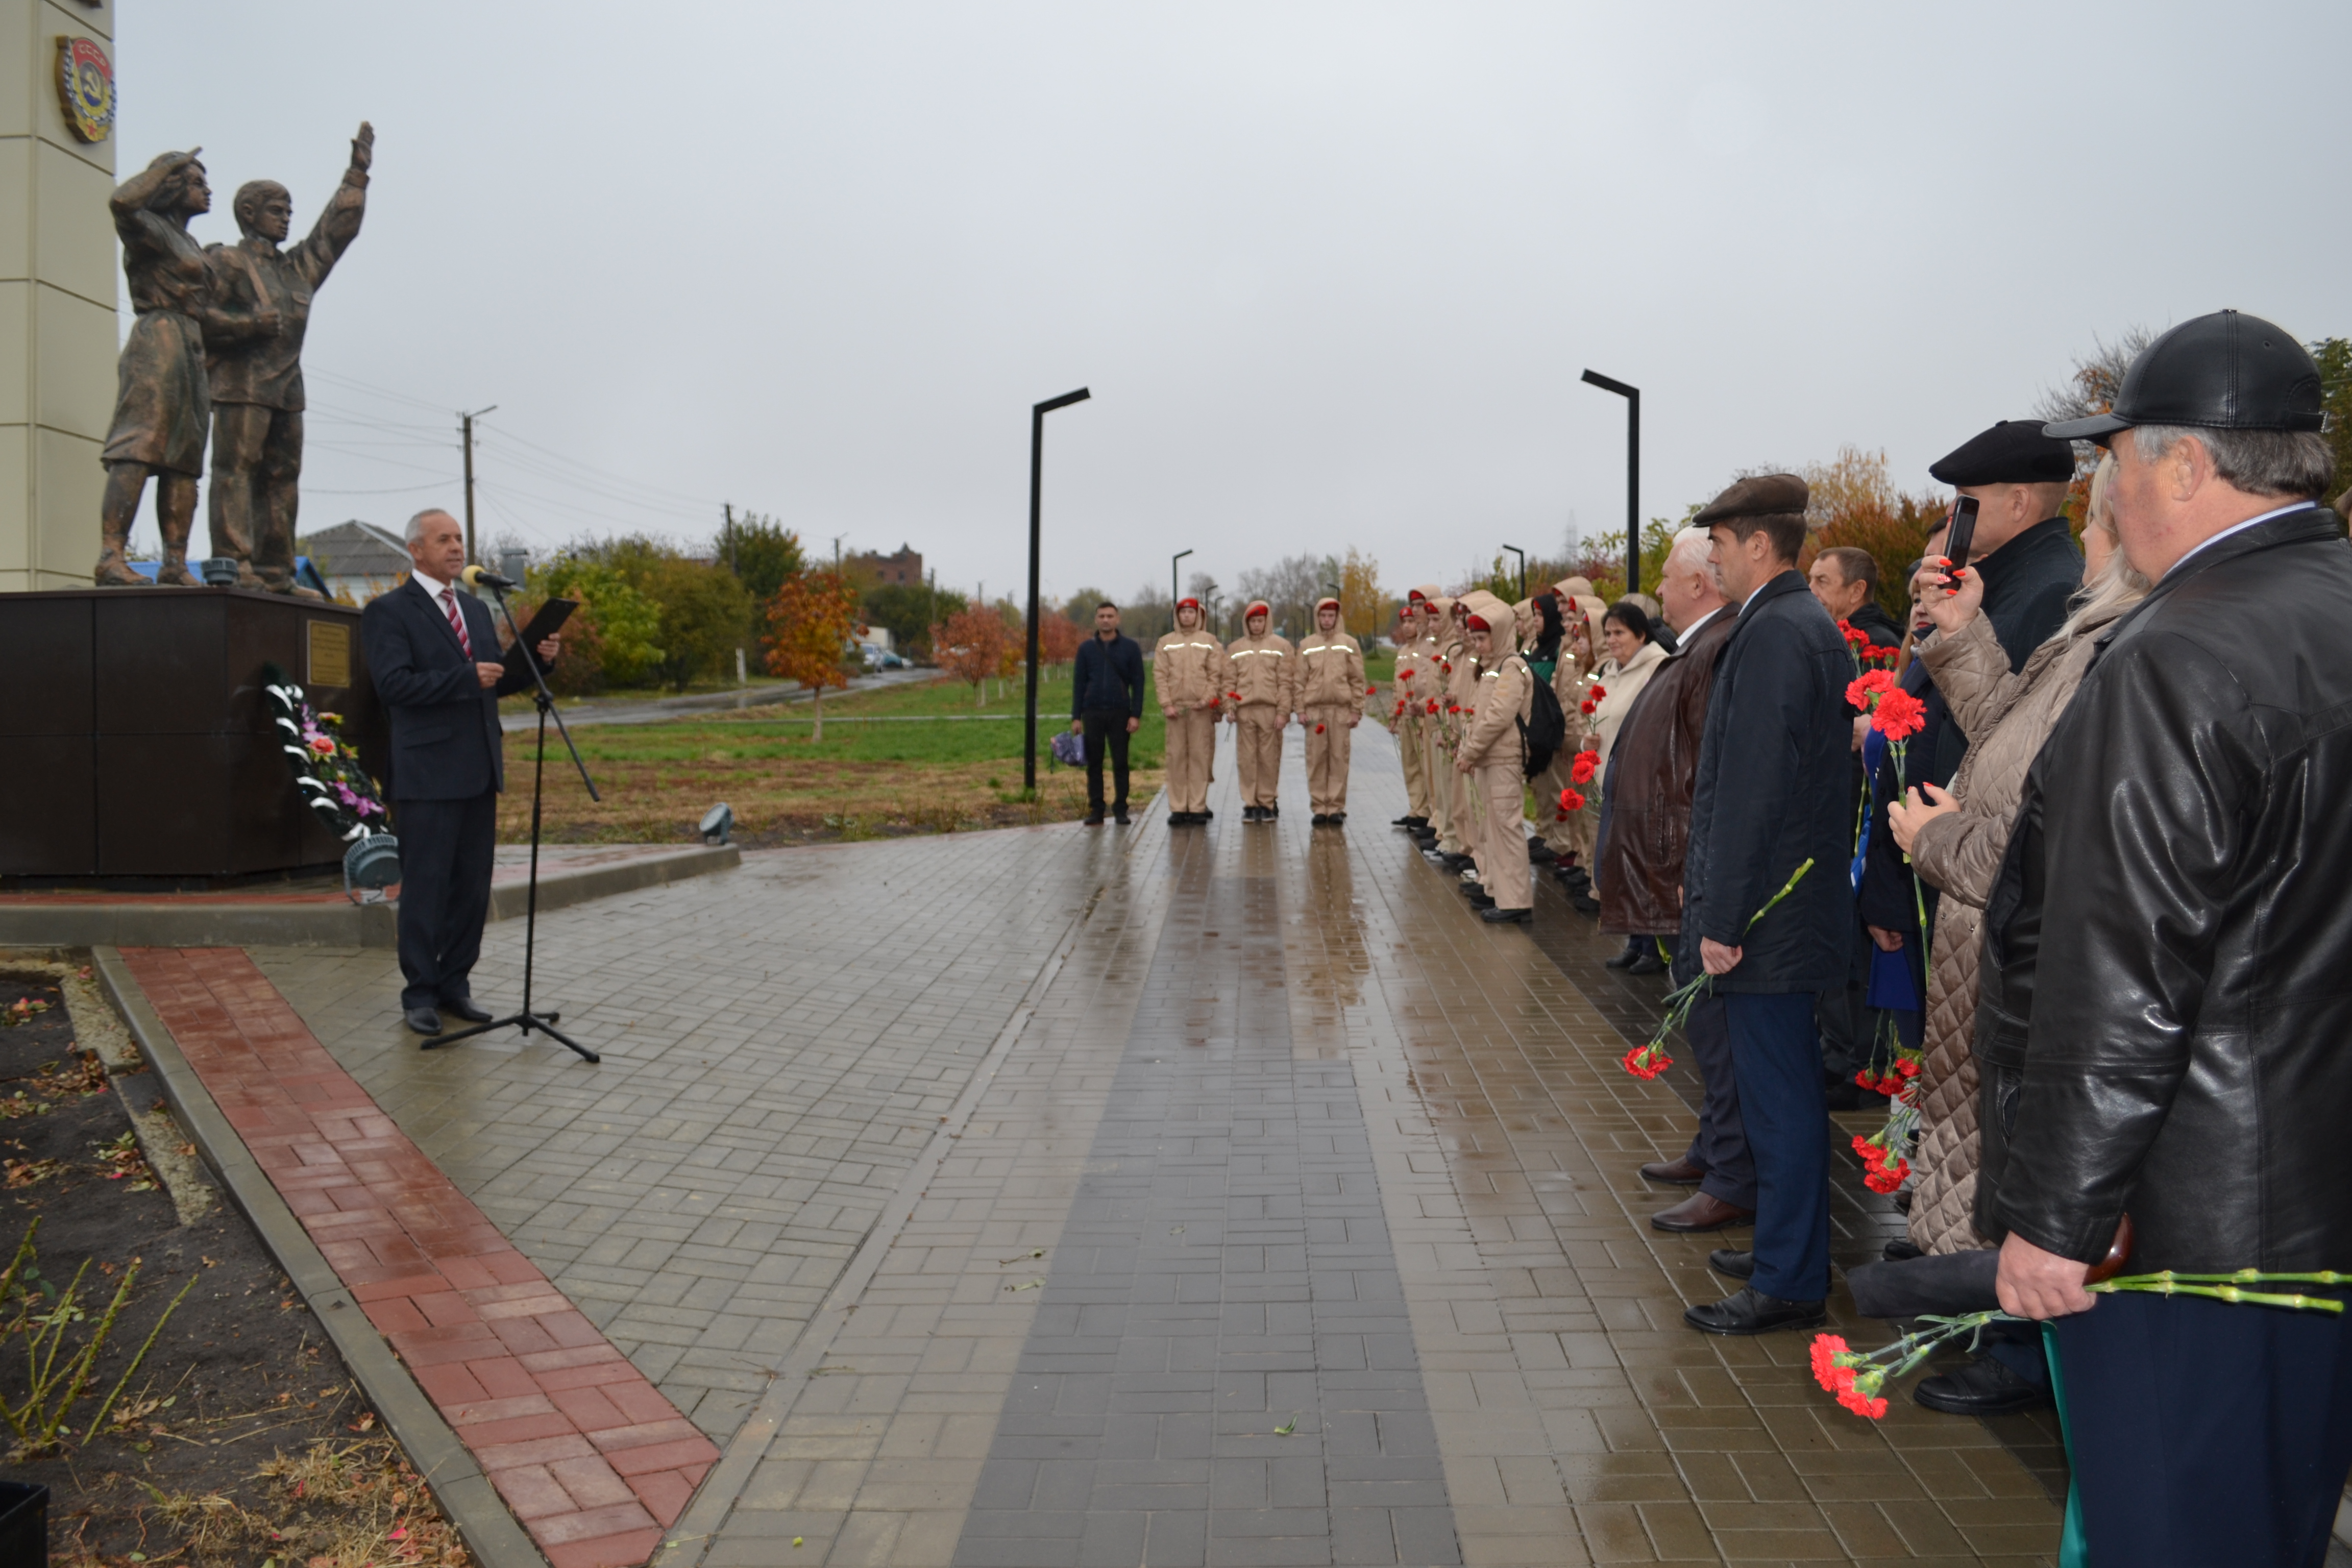 27 октября, в честь 105-летия ВЛКСМ, состоялось возложение цветов у памятника пионерам и комсомольцам, погибшим в годы Великой Отечественной войны.